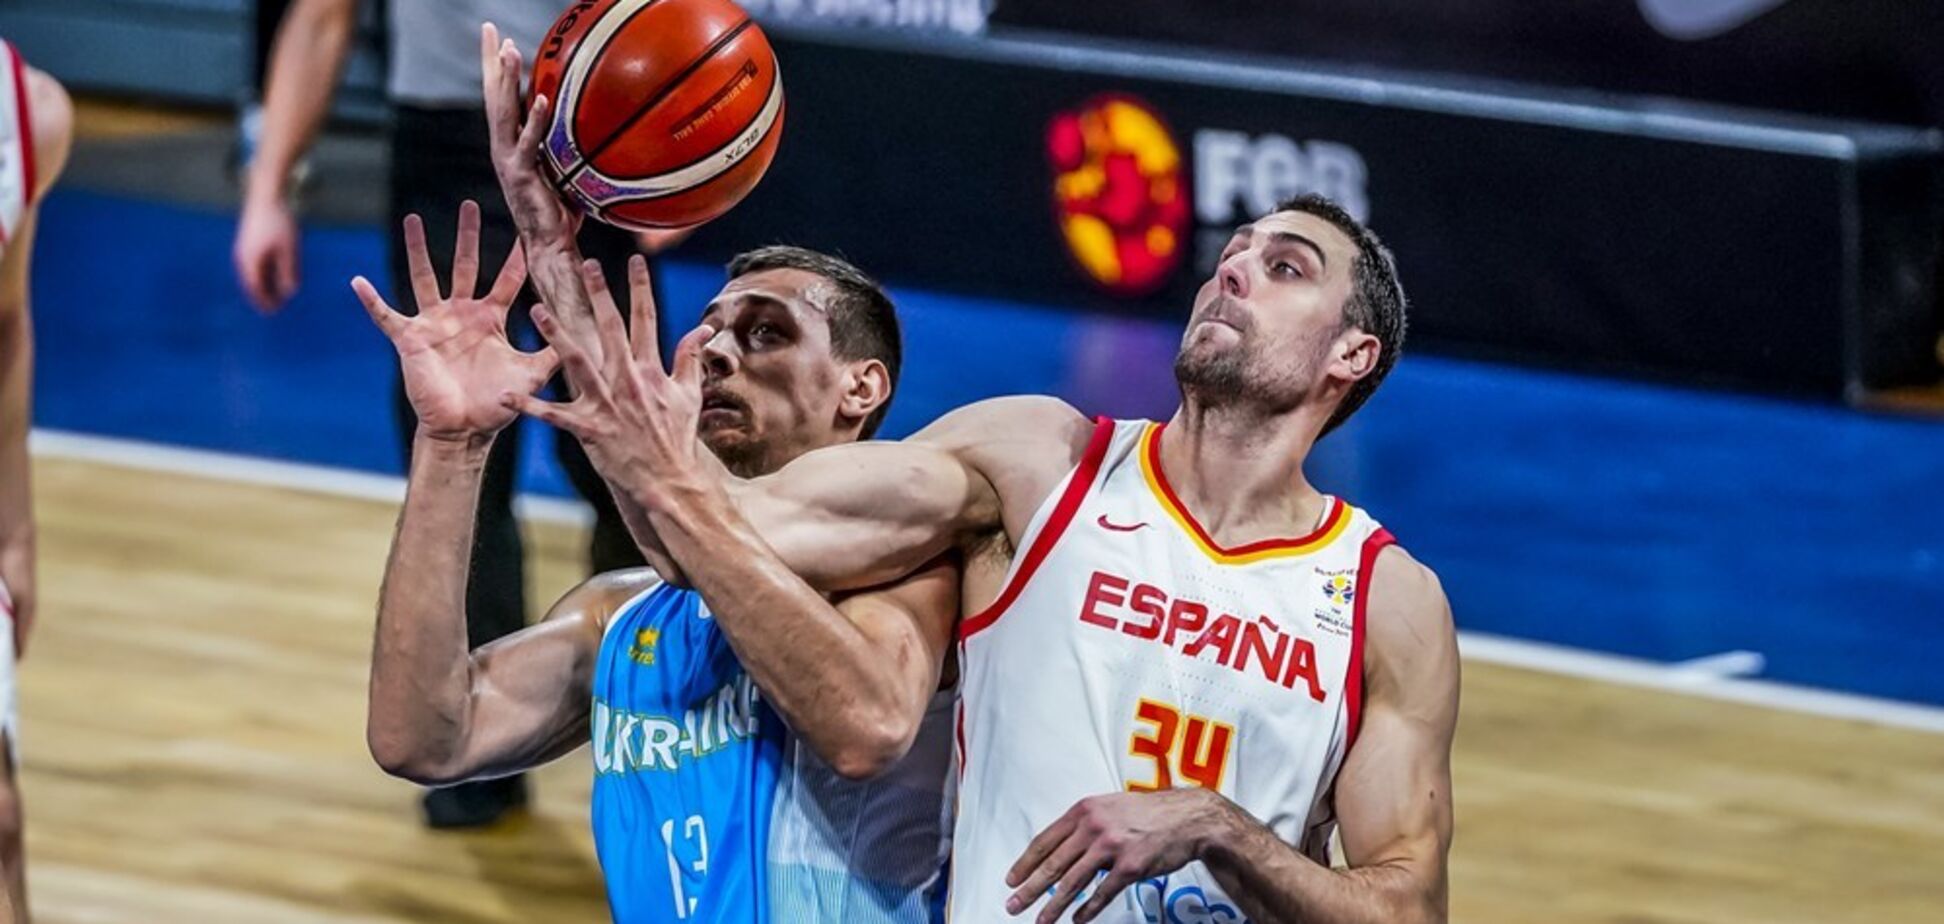 Іспанія - Україна: найкращі моменти баскетбольного матчу збірних